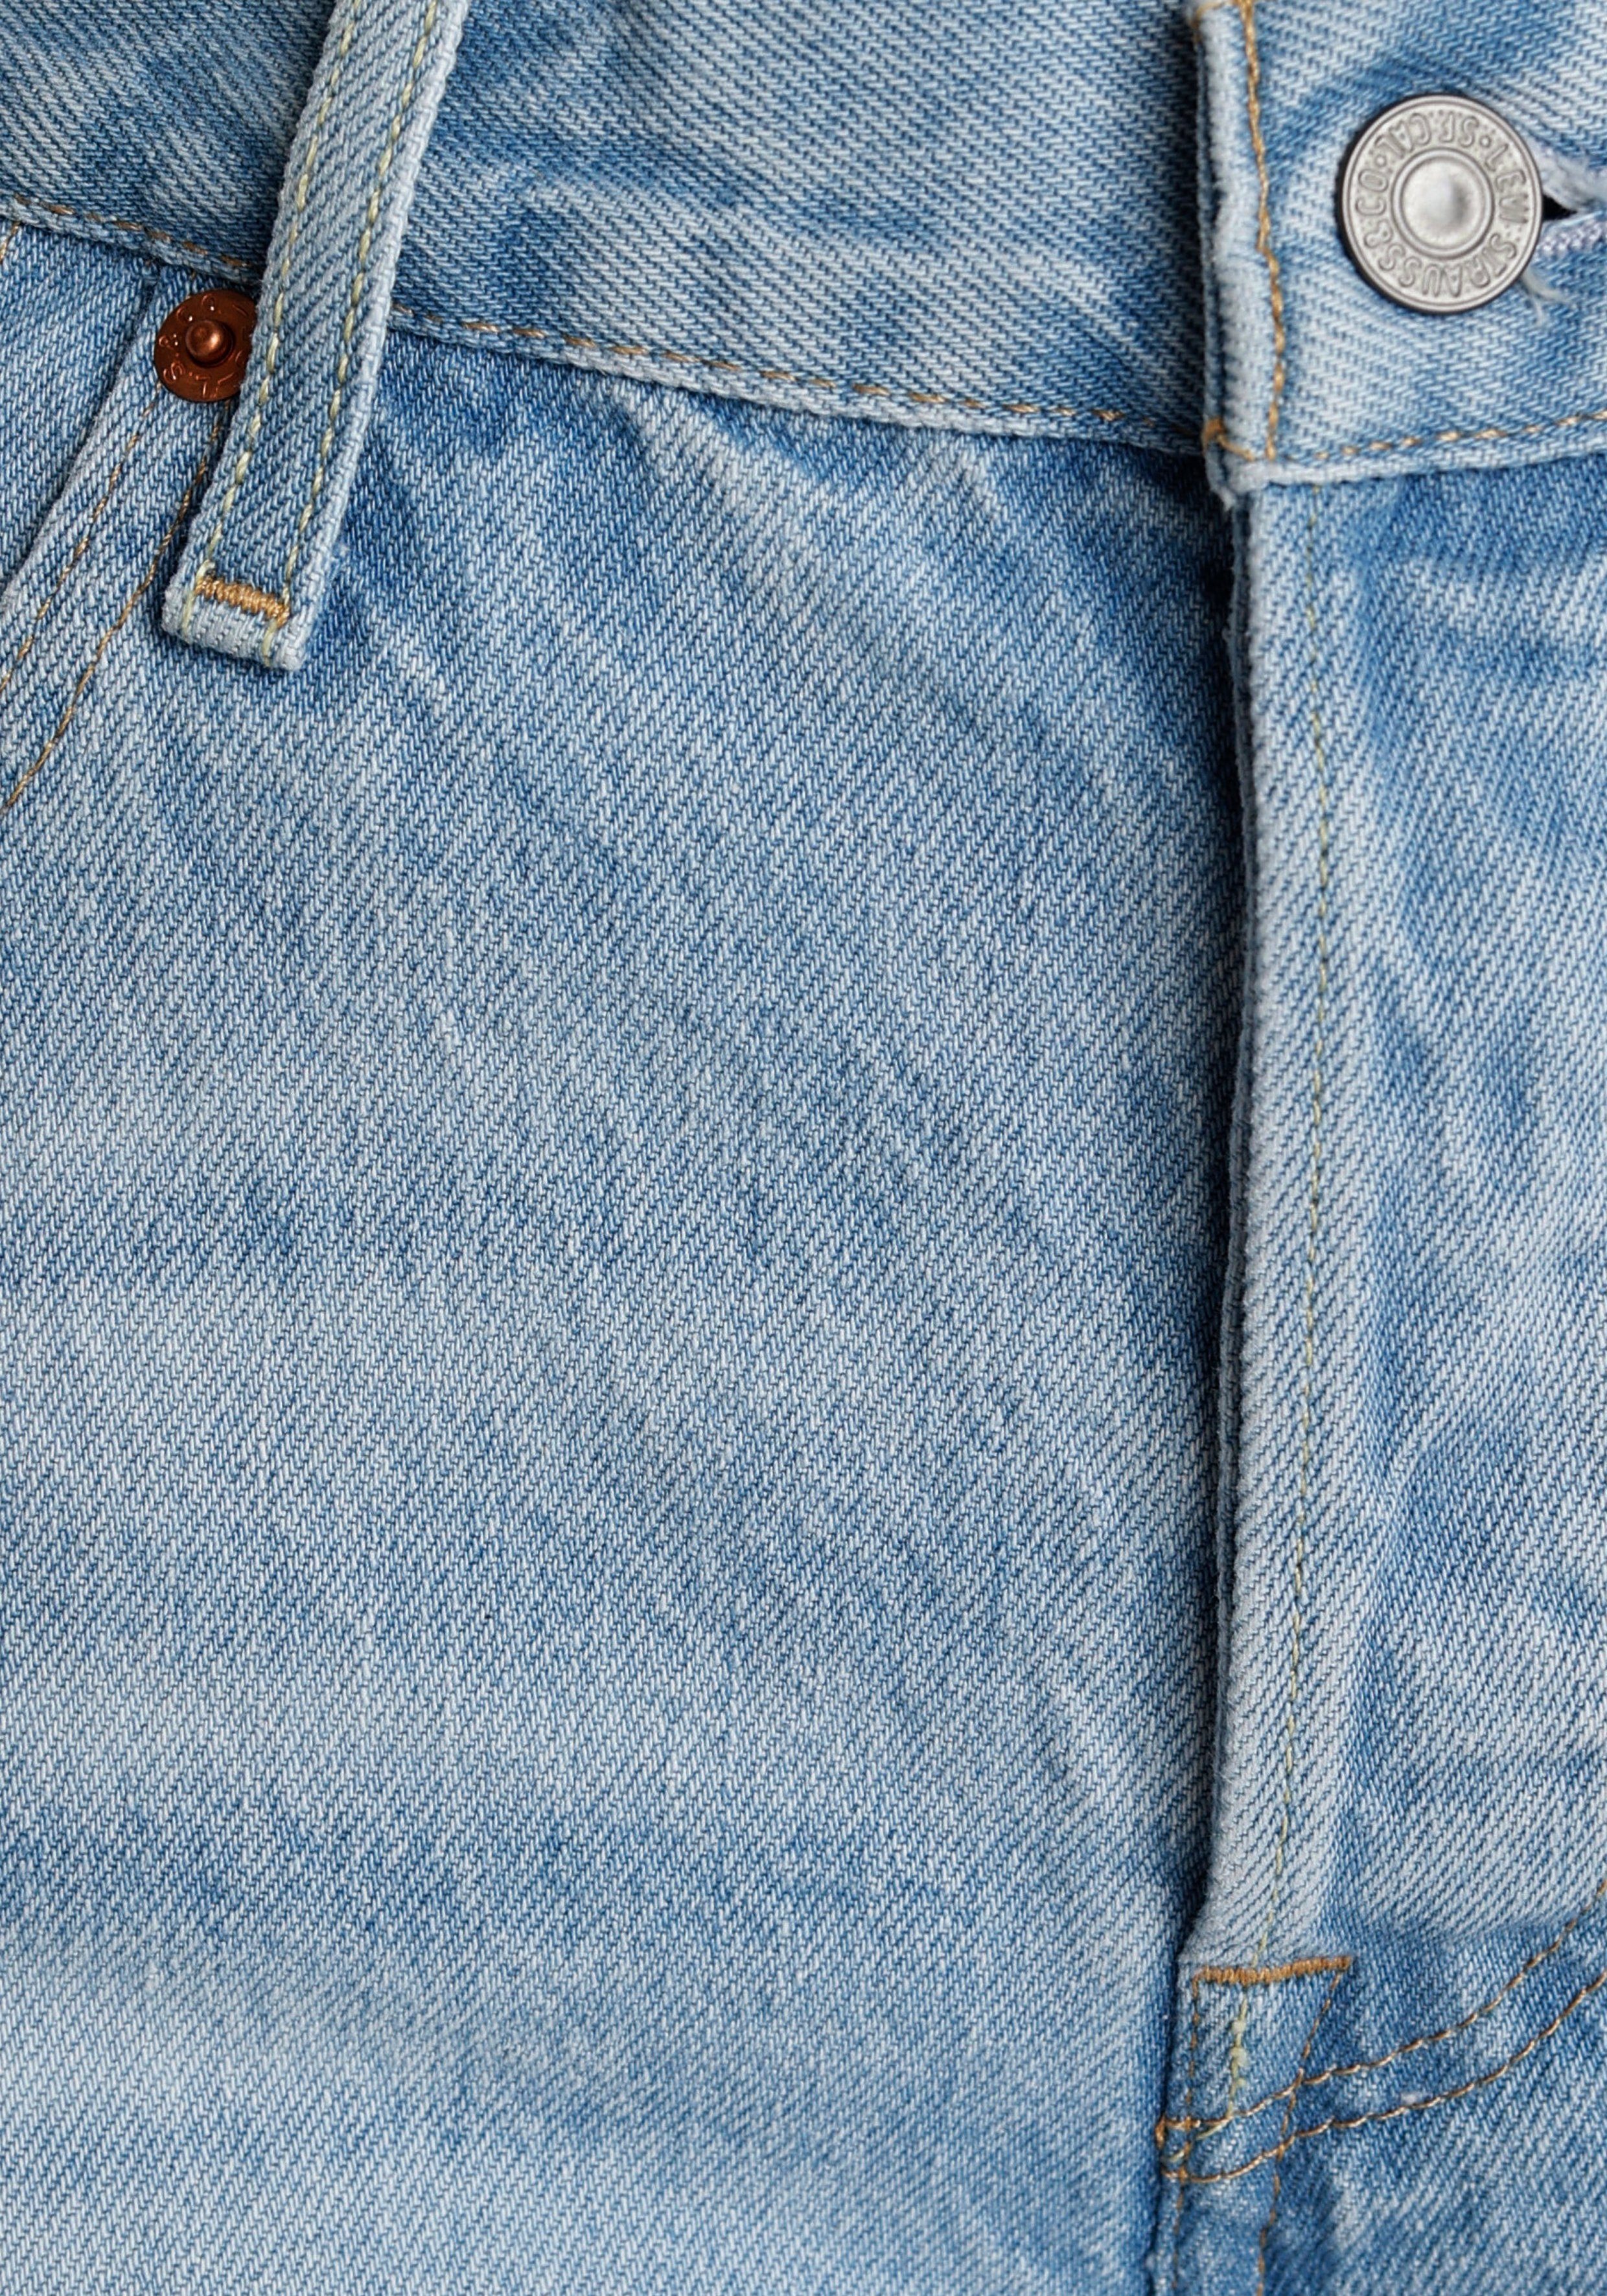 Levi's® Jeansshorts Mit 501 glaring Saum Short krempelbarem Long und Knopfverschluss